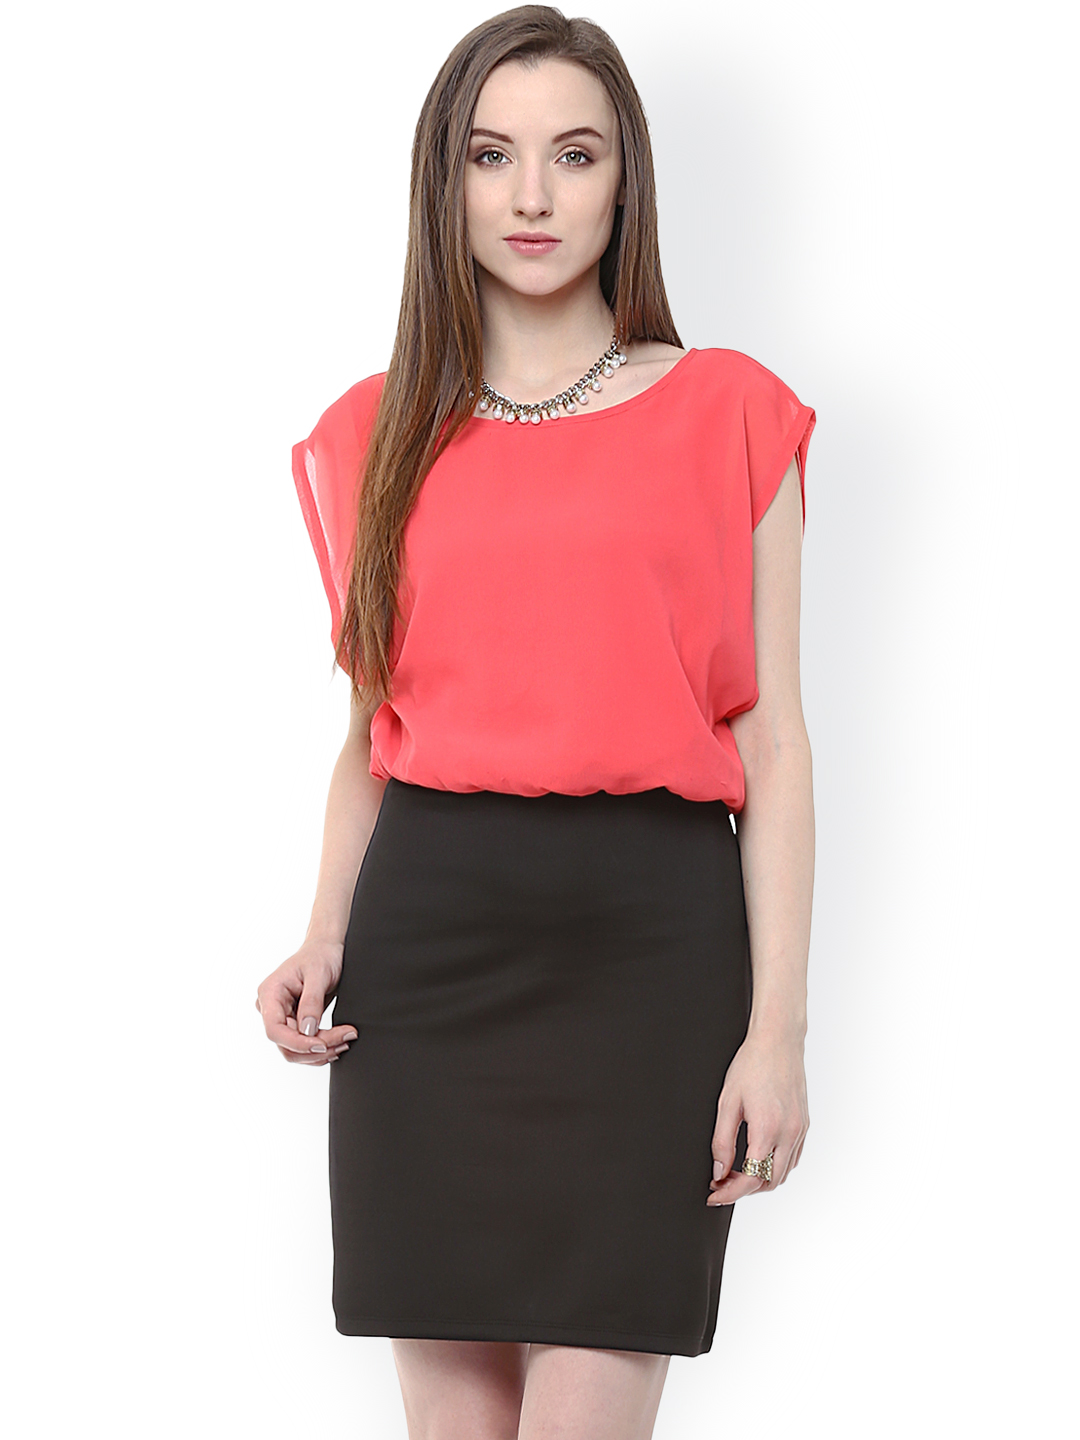 Zima Leto Coral Pink & Black Blouson Dress Price in India